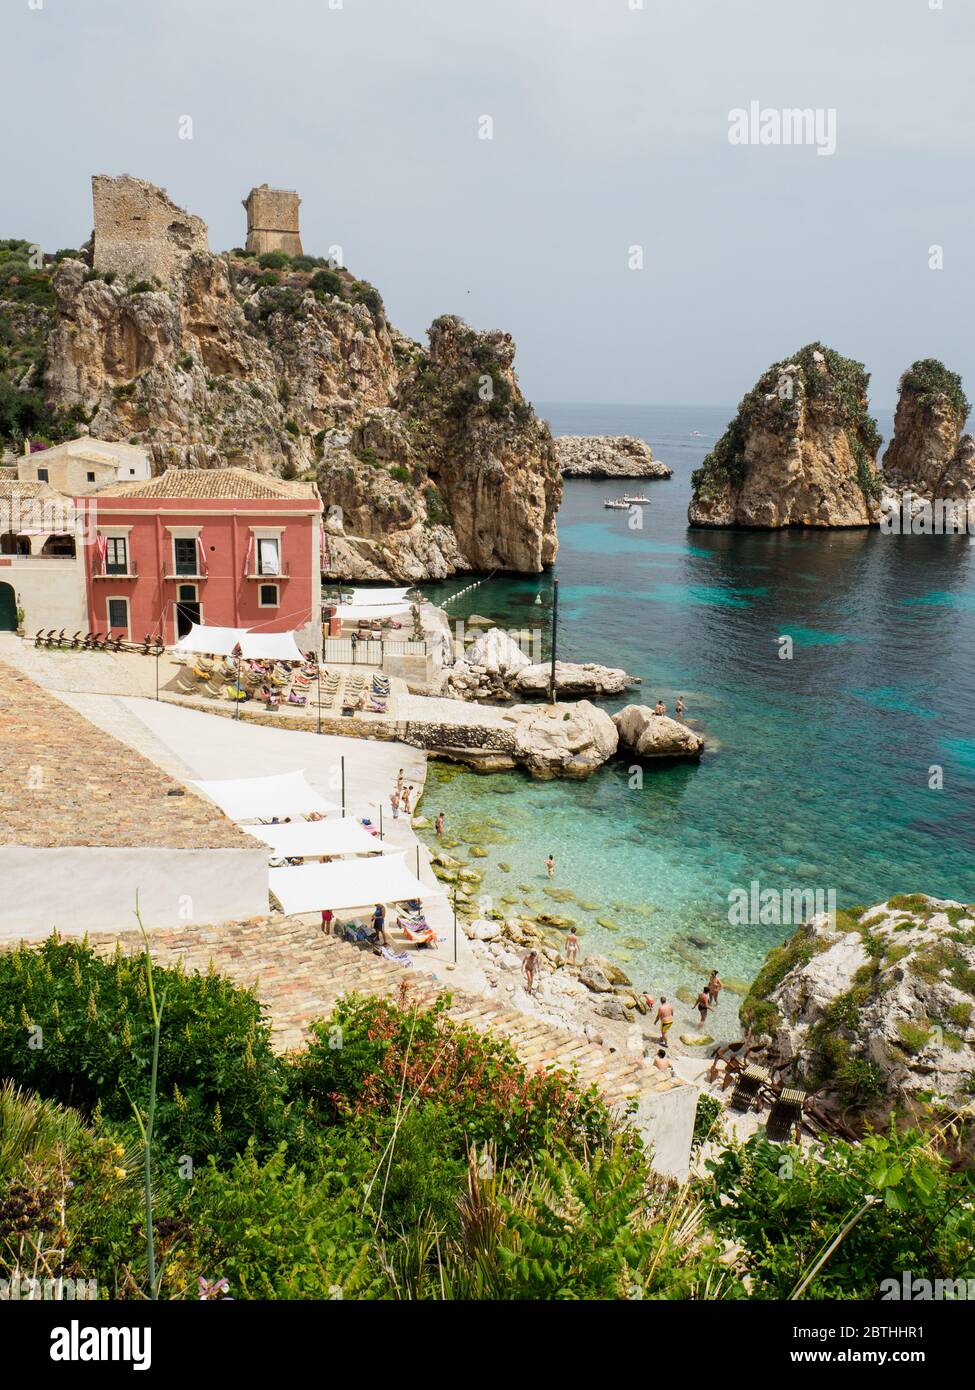 Ein einzigartiger Blick auf die Küste siziliens mit einer Tonnara und schönen Felsformationen mit dem türkisfarbenen Meer Stockfoto